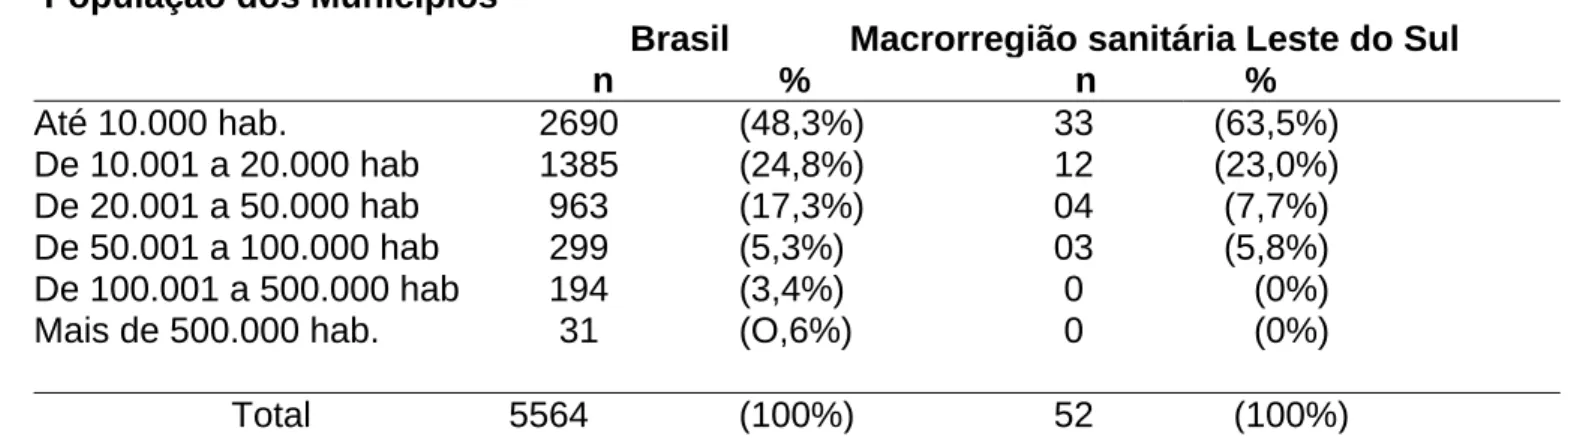 Tabela 1: Números de municípios e porcentagem em relação à população  dos municípios da macrorregião sanitária de Leste do Sul (MG) e do  Brasil, (2007)